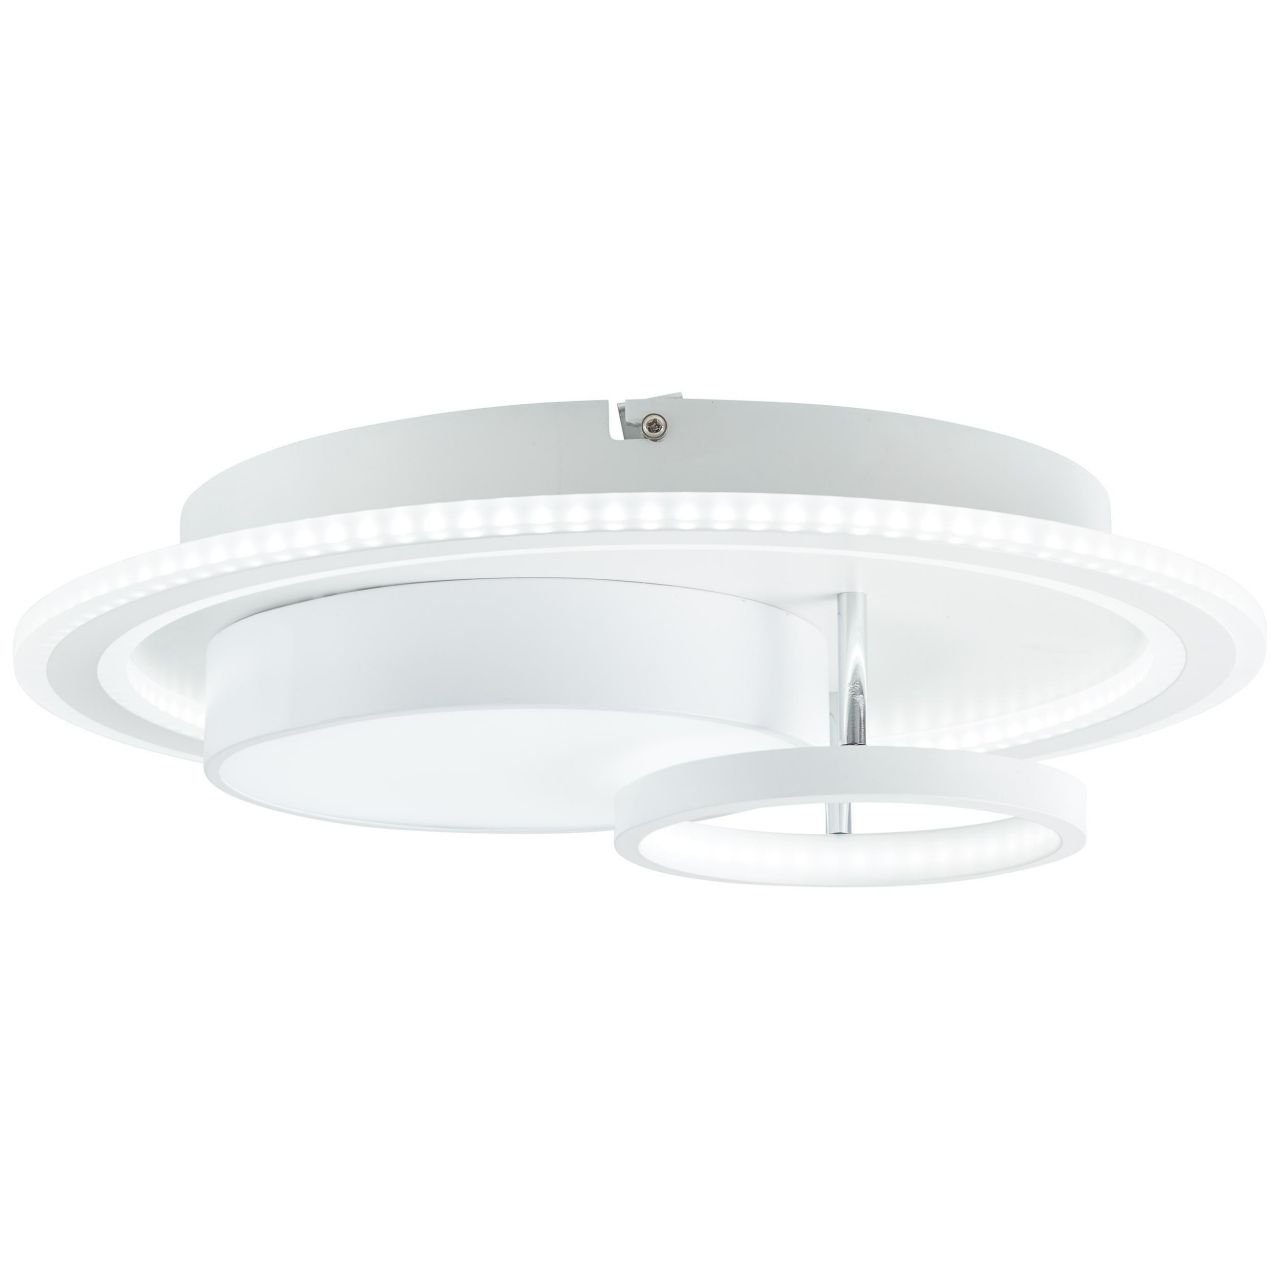 Sigune, Brilliant Deckenleuchte 40x40cm Lampe, LED 1x Sigune 3000K, weiß/schwarz, integrier LED Deckenleuchte